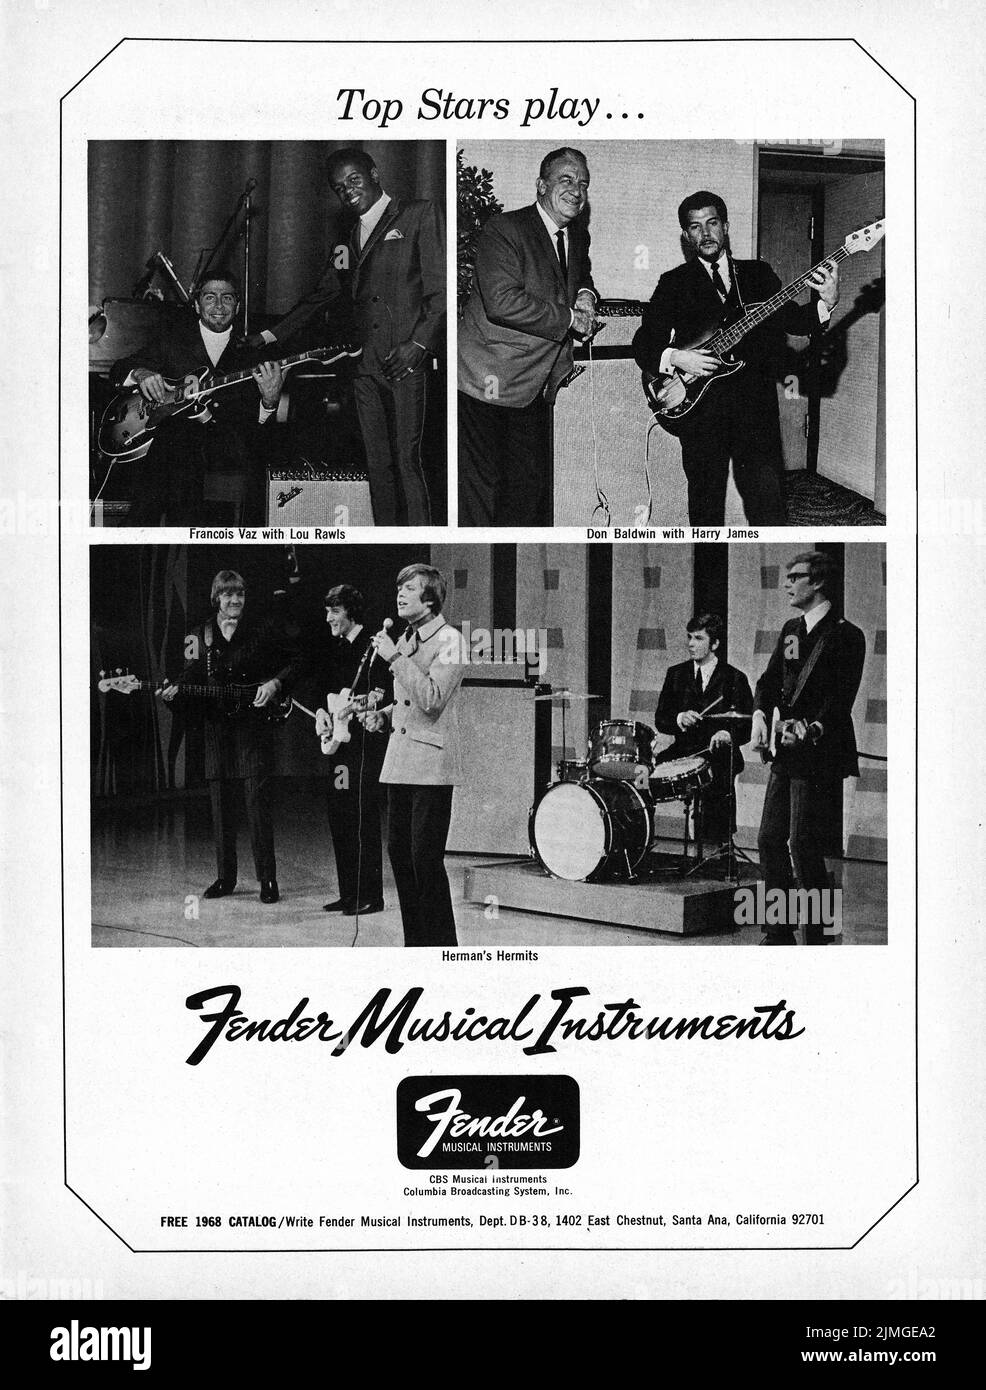 Un anuncio de guitarra Fender de una revista musical de 1968 que muestra que las mejores estrellas tocan instrumentos Fender. El anuncio incluye a Lou Rawls, Harry James & Herman's Hermits. Foto de stock